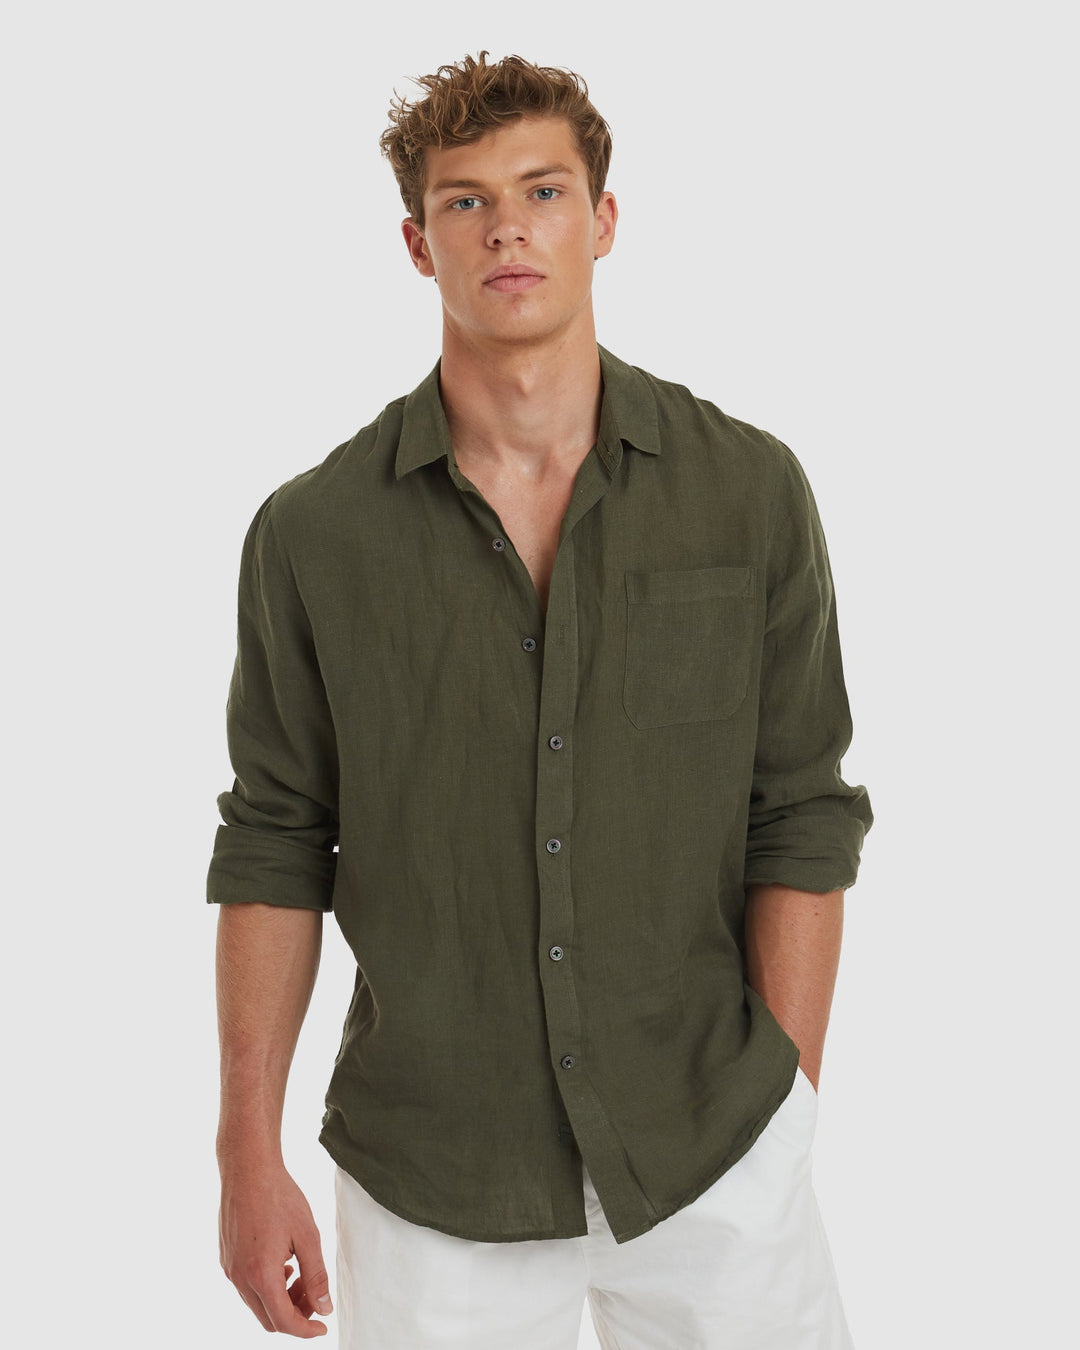 Tulum Green Linen Shirt Long Sleeve - Slim Fit